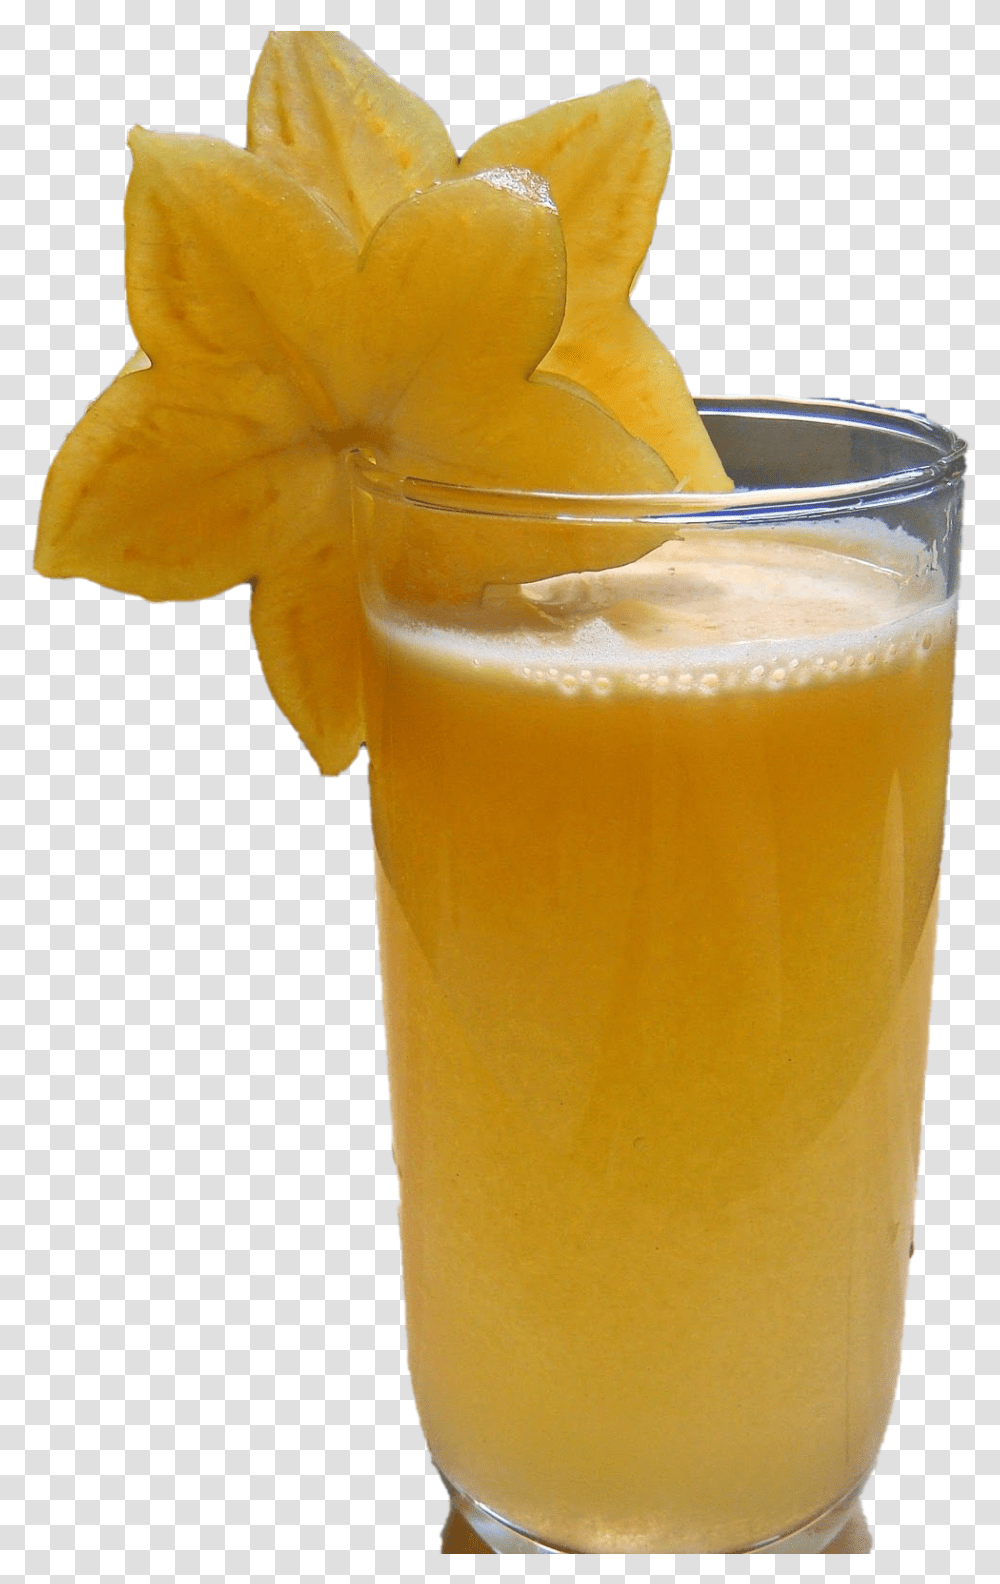 Starfruit Juice Hd Star Fruit Juice, Beverage, Drink, Beer, Alcohol Transparent Png